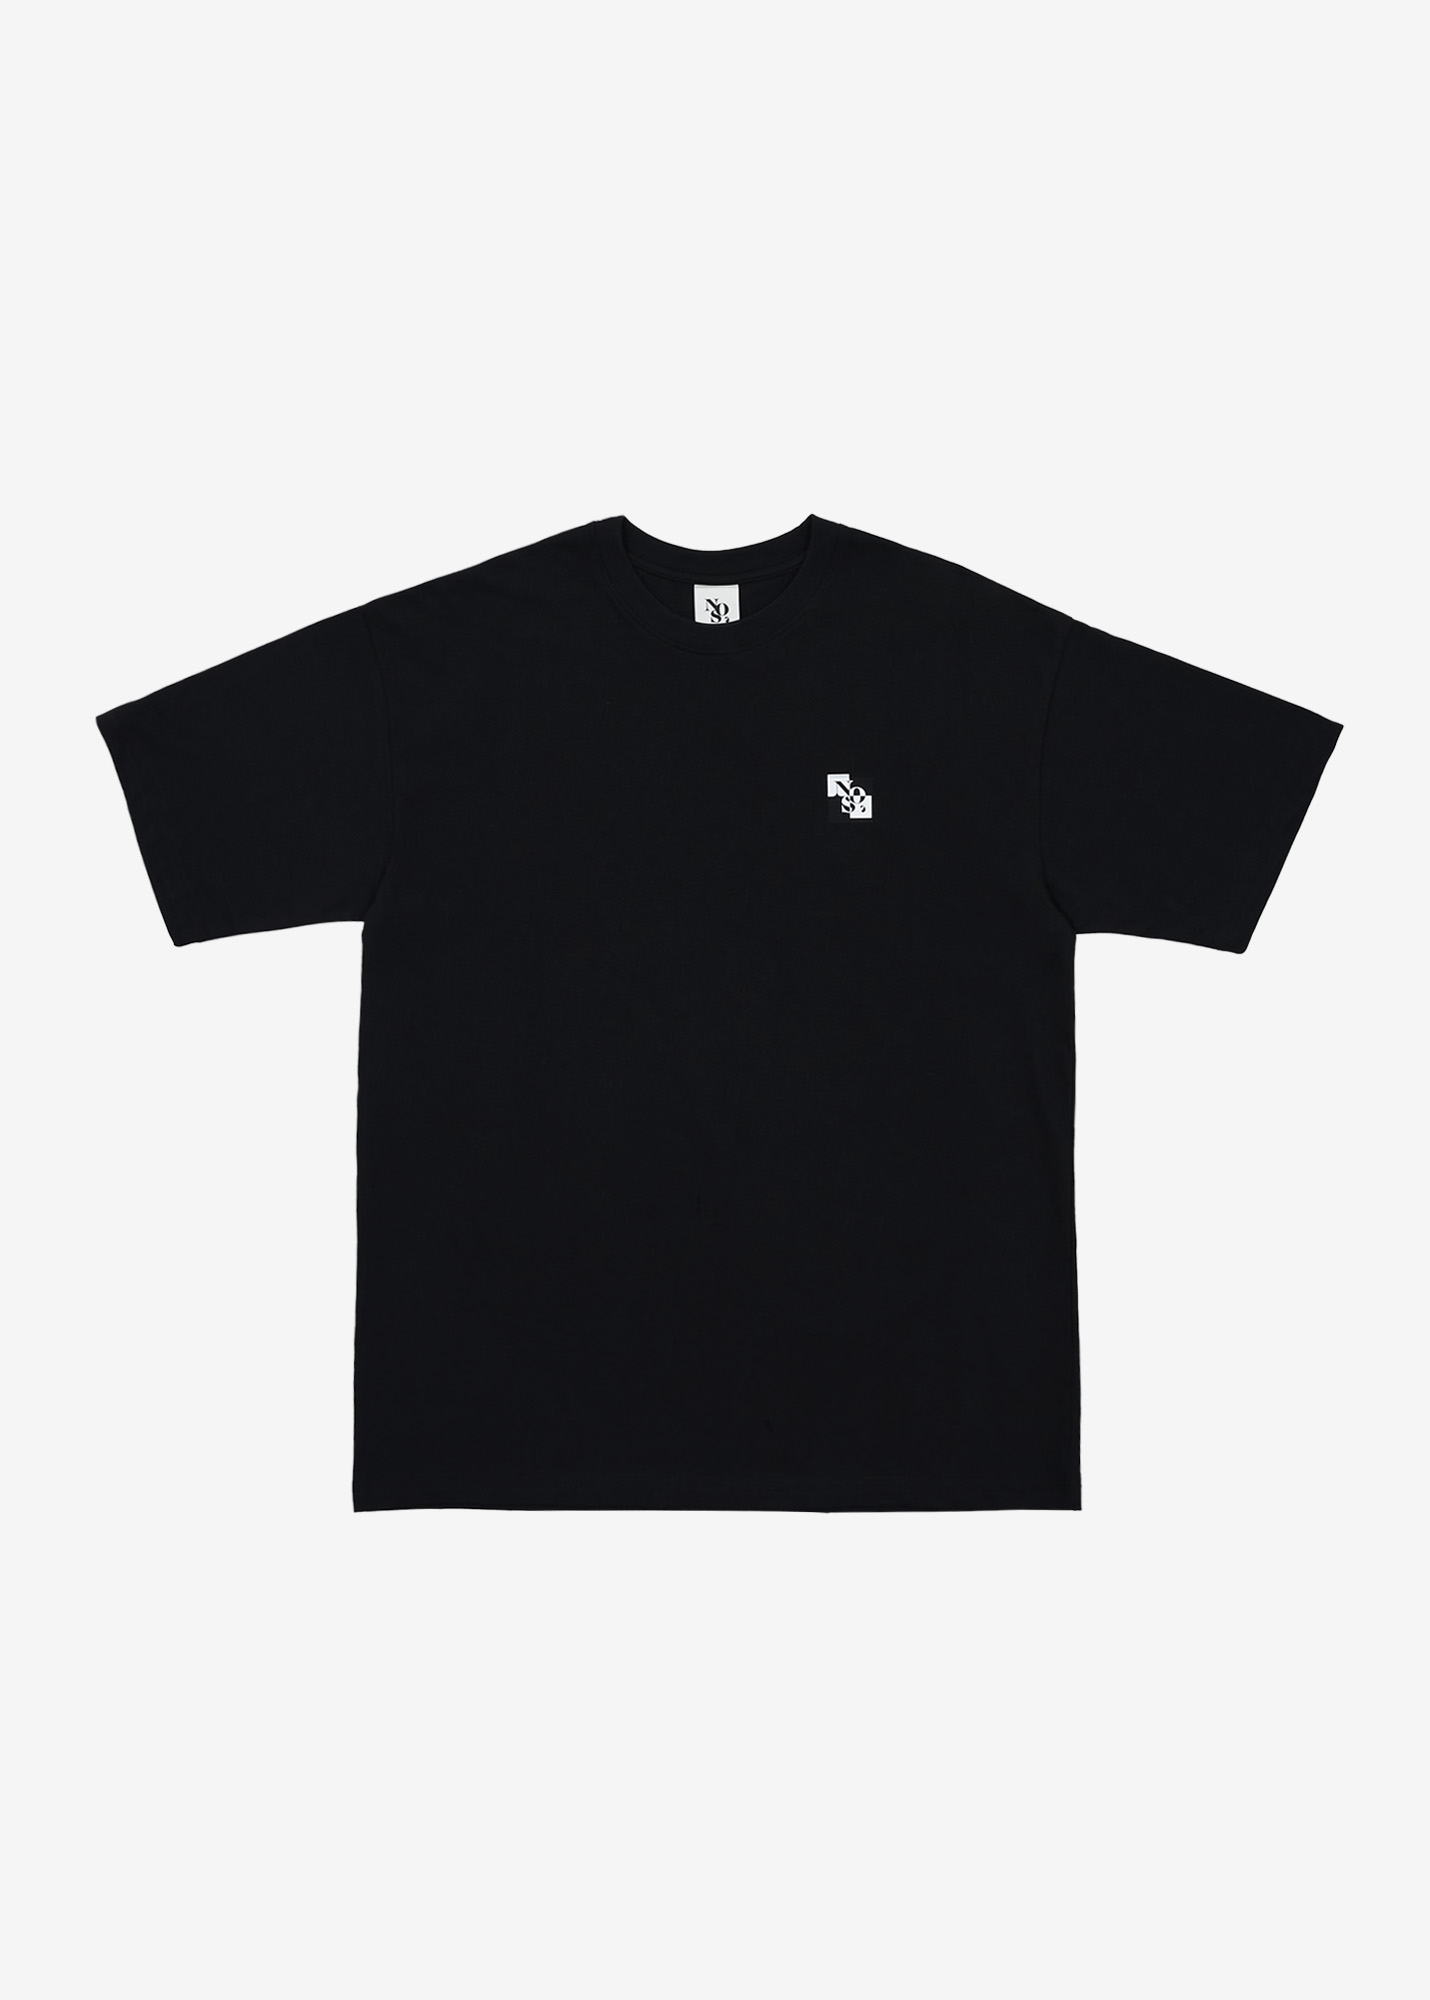 NOS7 Check T-shirt - Black